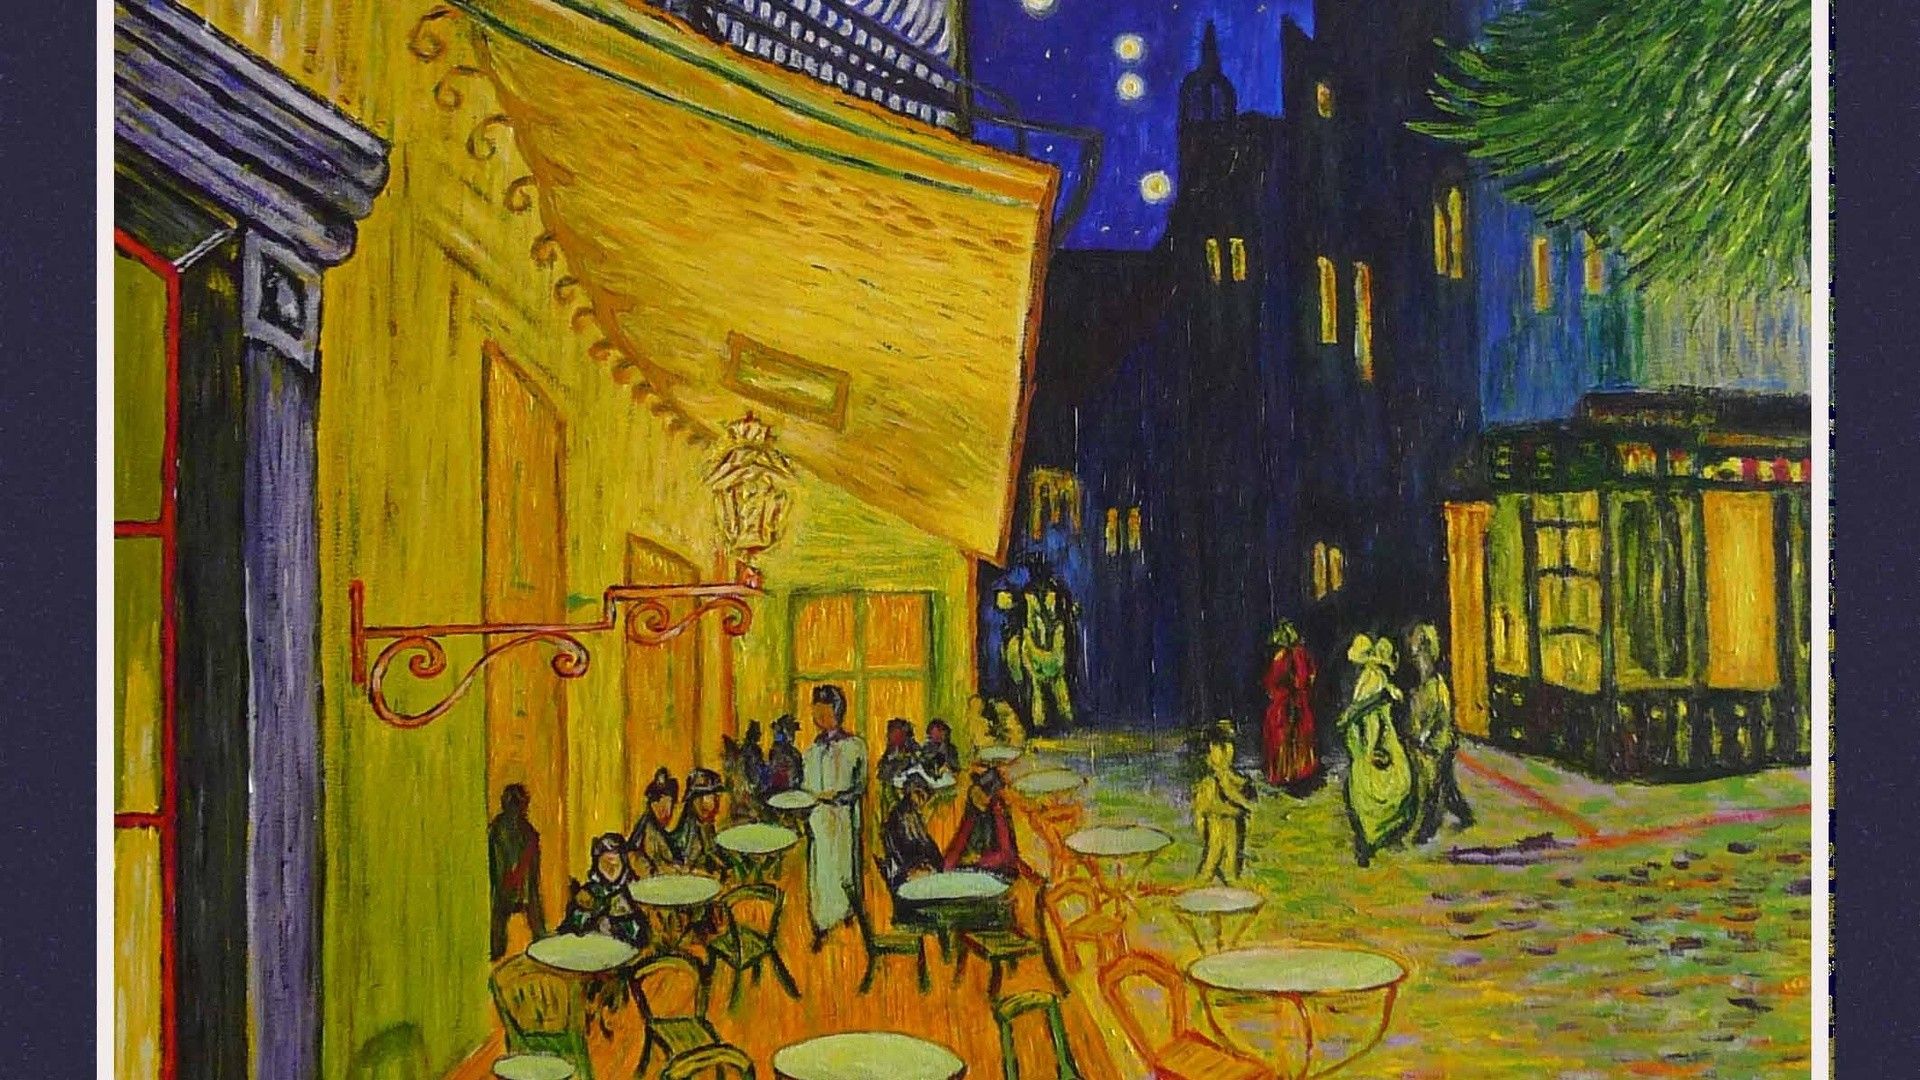 Fondos de Van Gogh the Night Cafe (más de 47 imágenes)